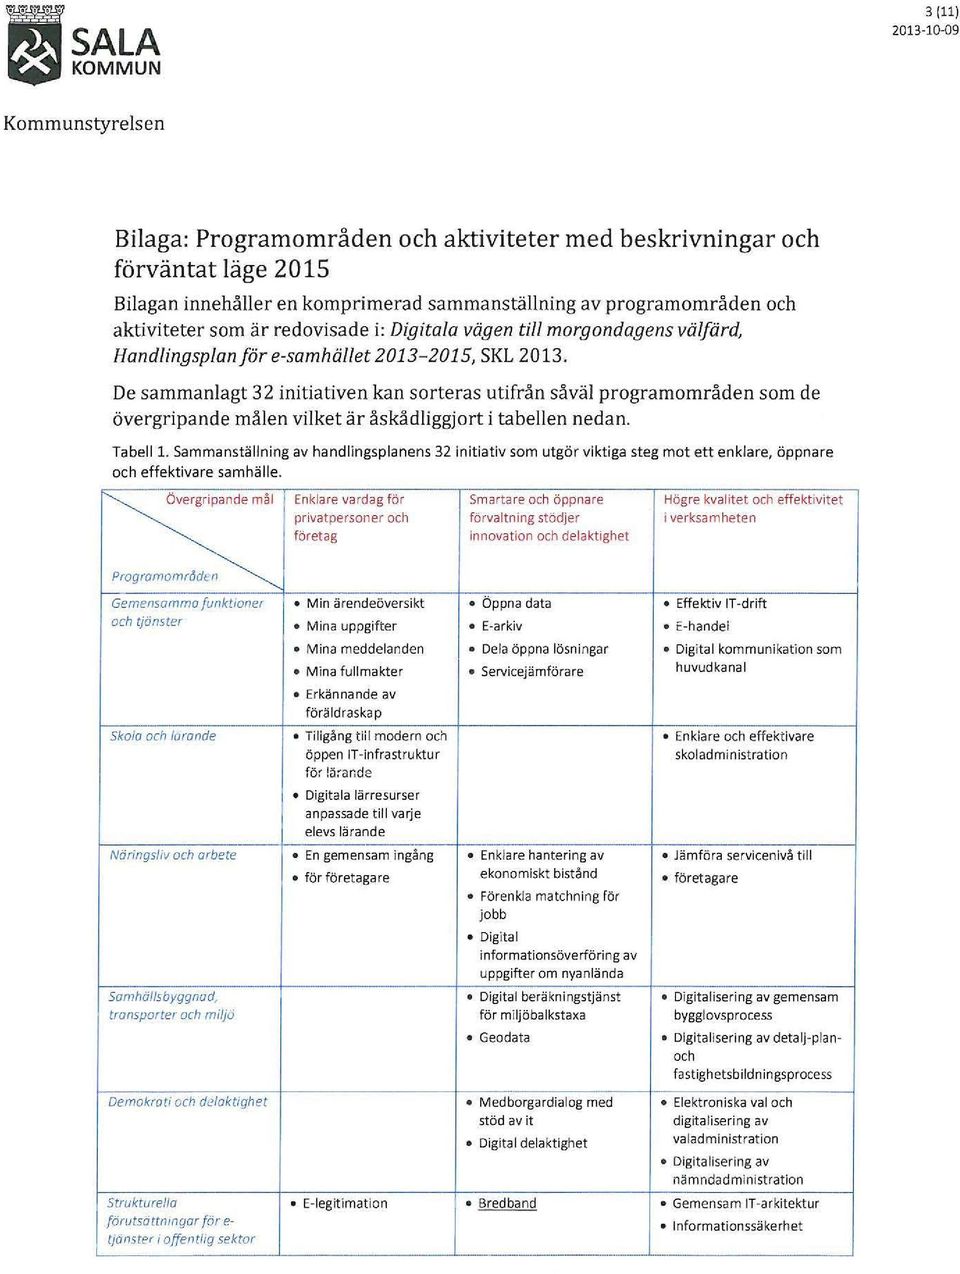 De sammanlagt 32 initiativen kan sorteras utifrån såväl programområden som de övergripande målen vilket är åskådliggjort i tabellen nedan. Tabell 1.